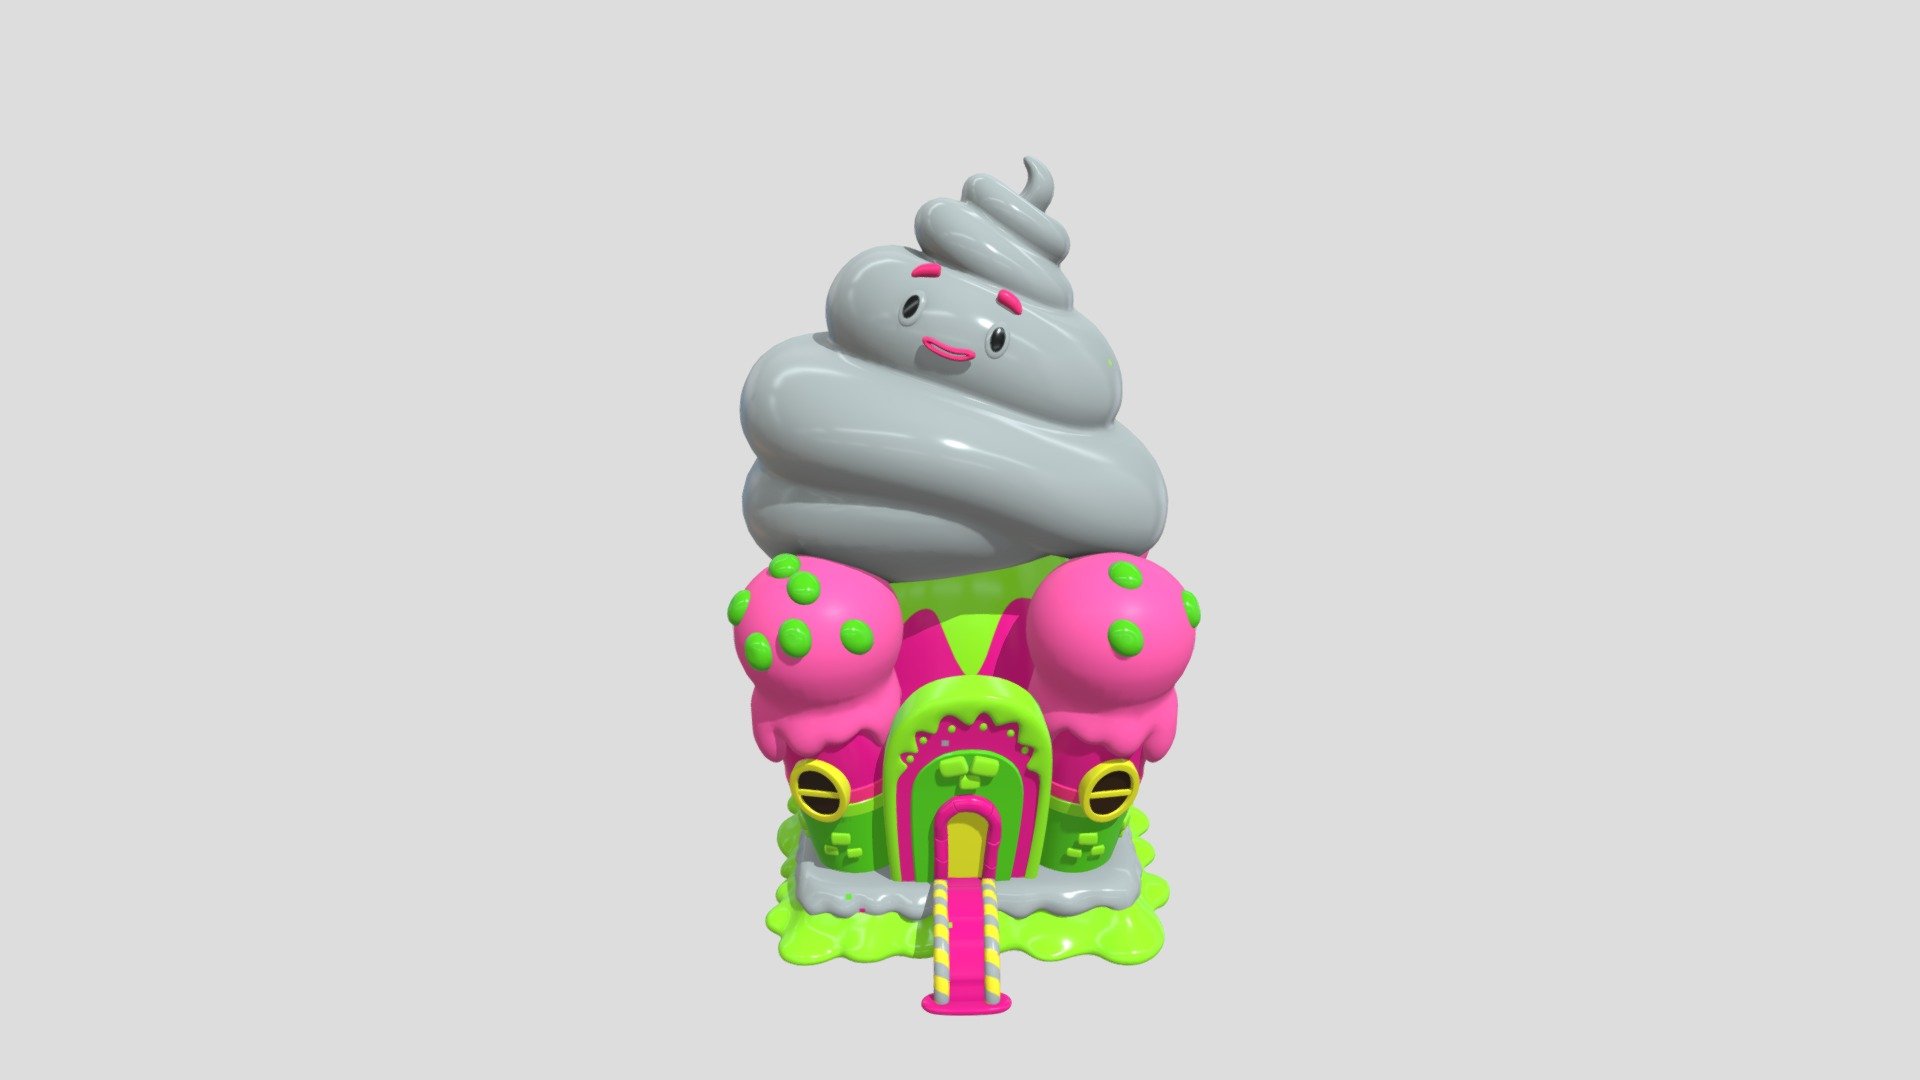 Ngôi nhà được chế tác bằng kẹo. Tuyệt vời - Candy House - Download Free 3D model by Jackie Do (@jackiedo) 3d model